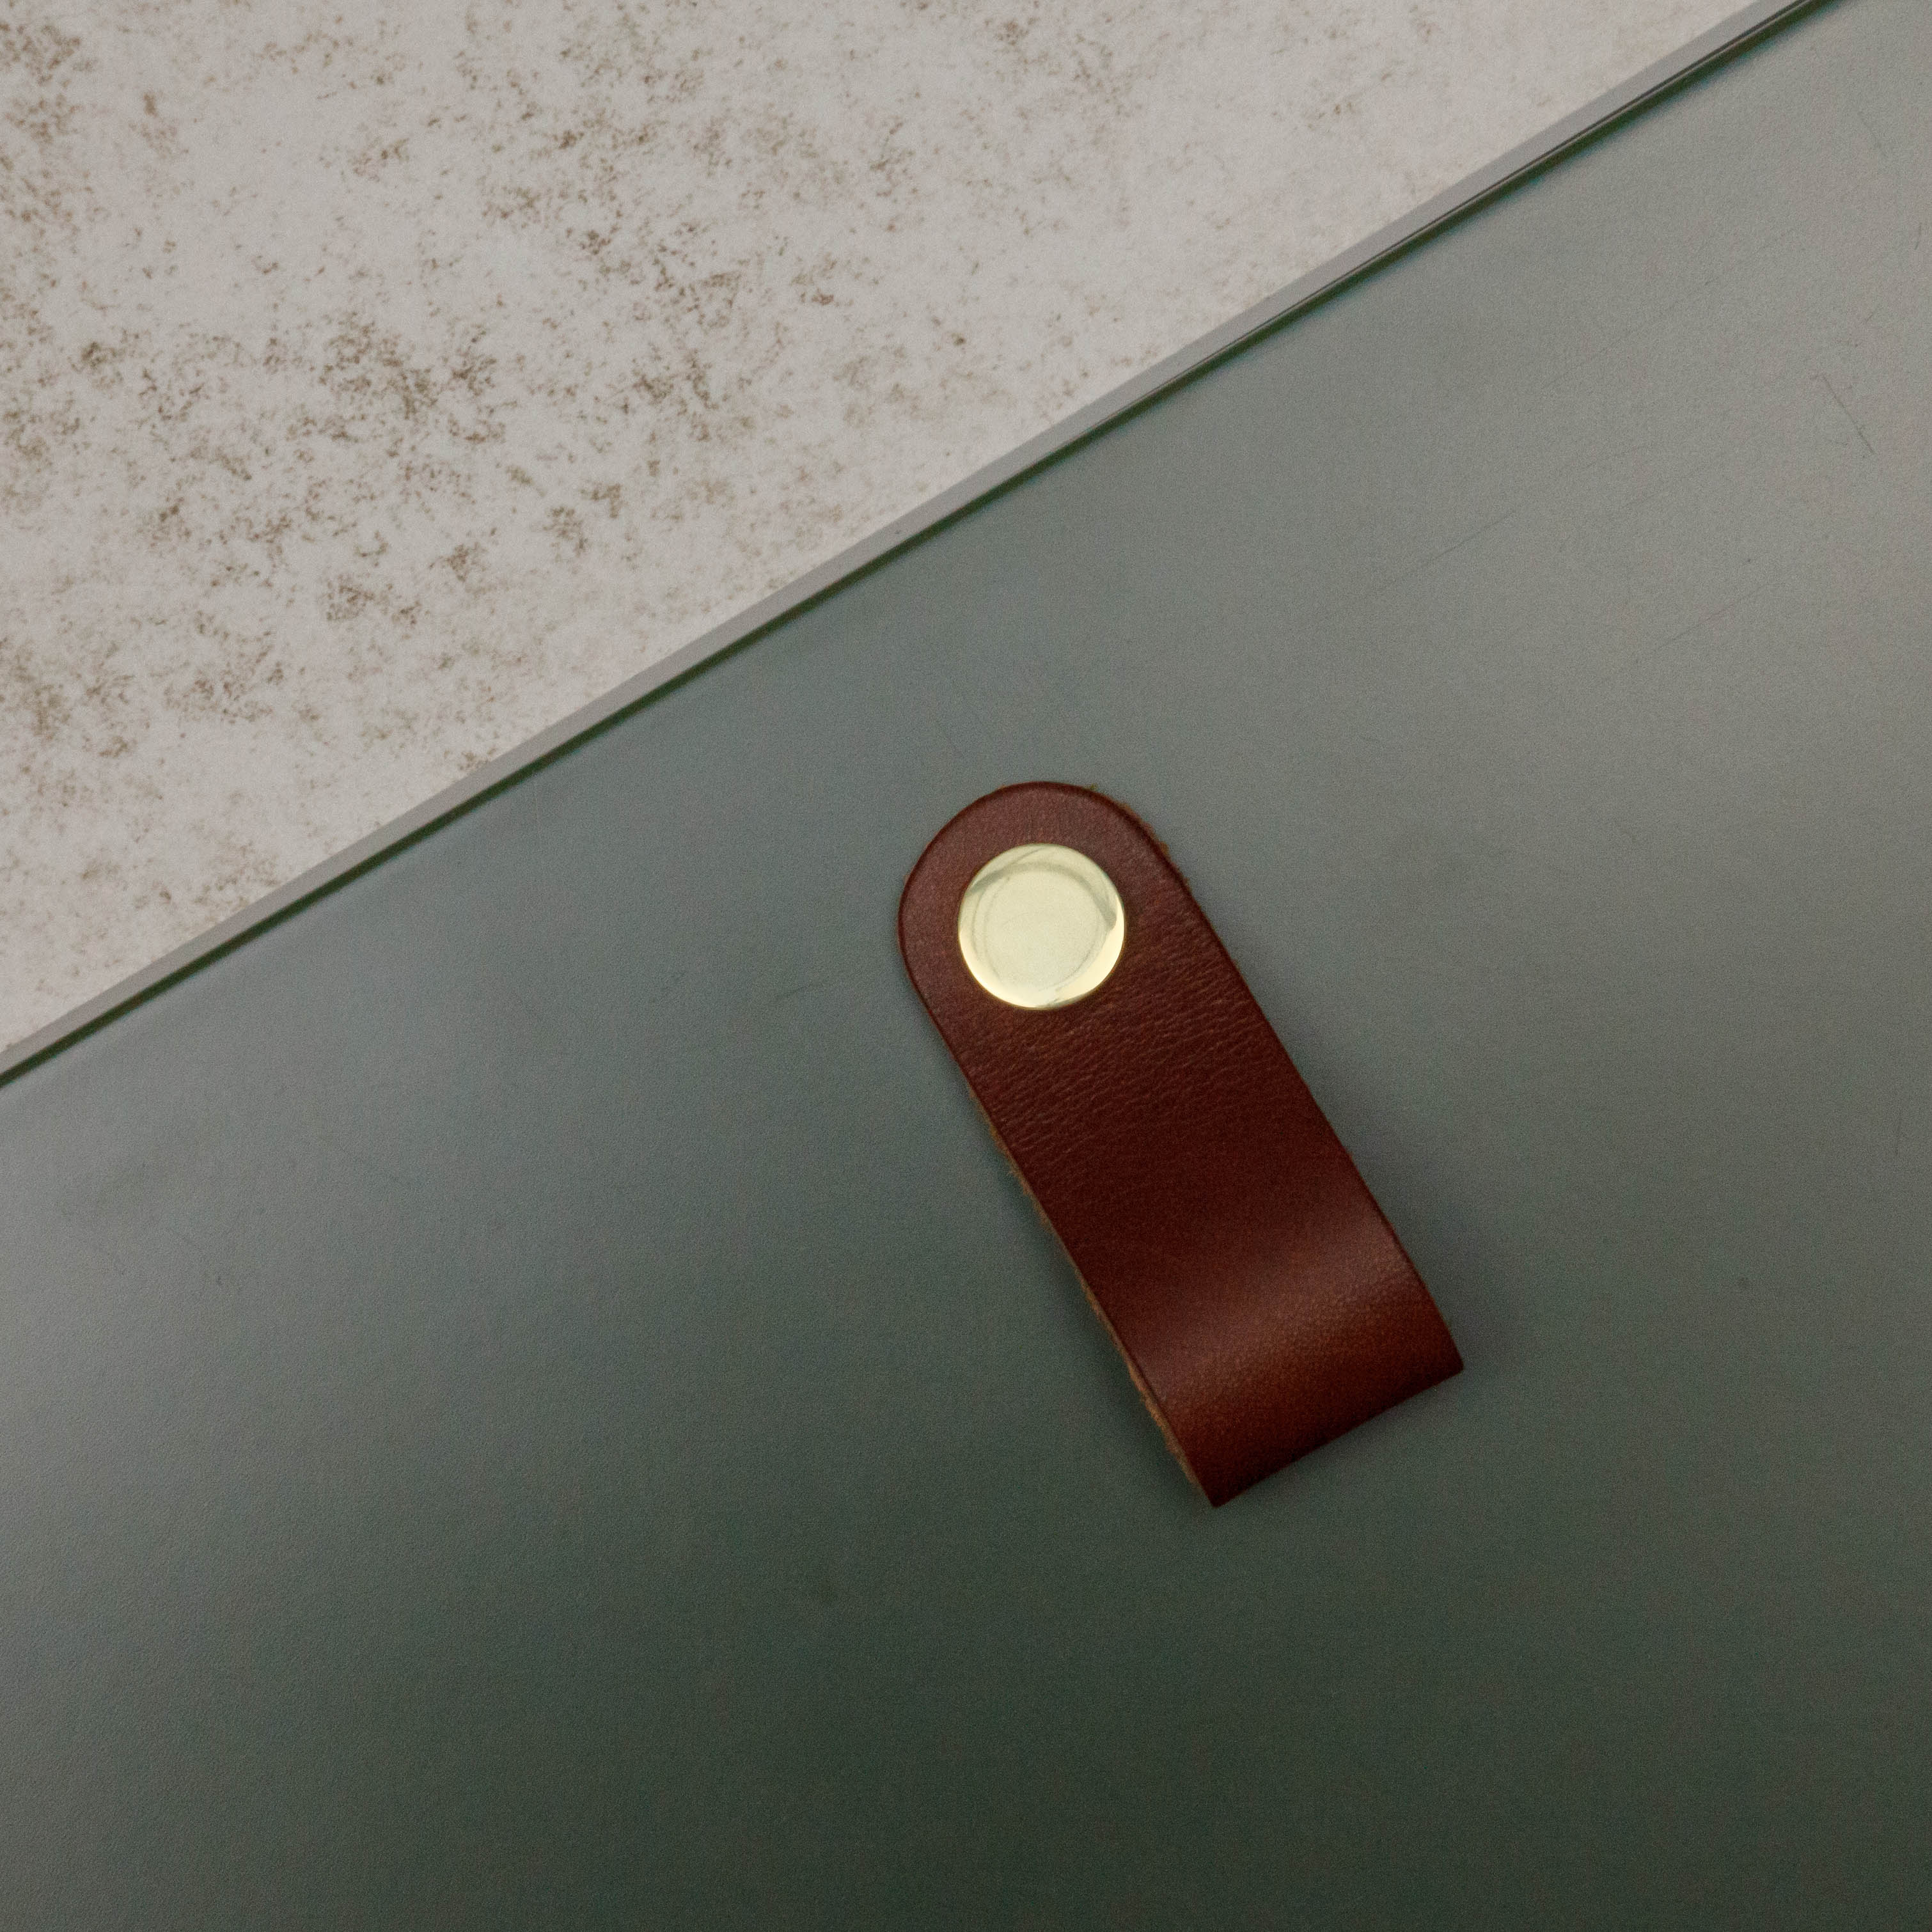 Bouton Bouton Loop arrondie, couleur marron/laiton, ref 333231-11, dimensions 70 x 25 mm